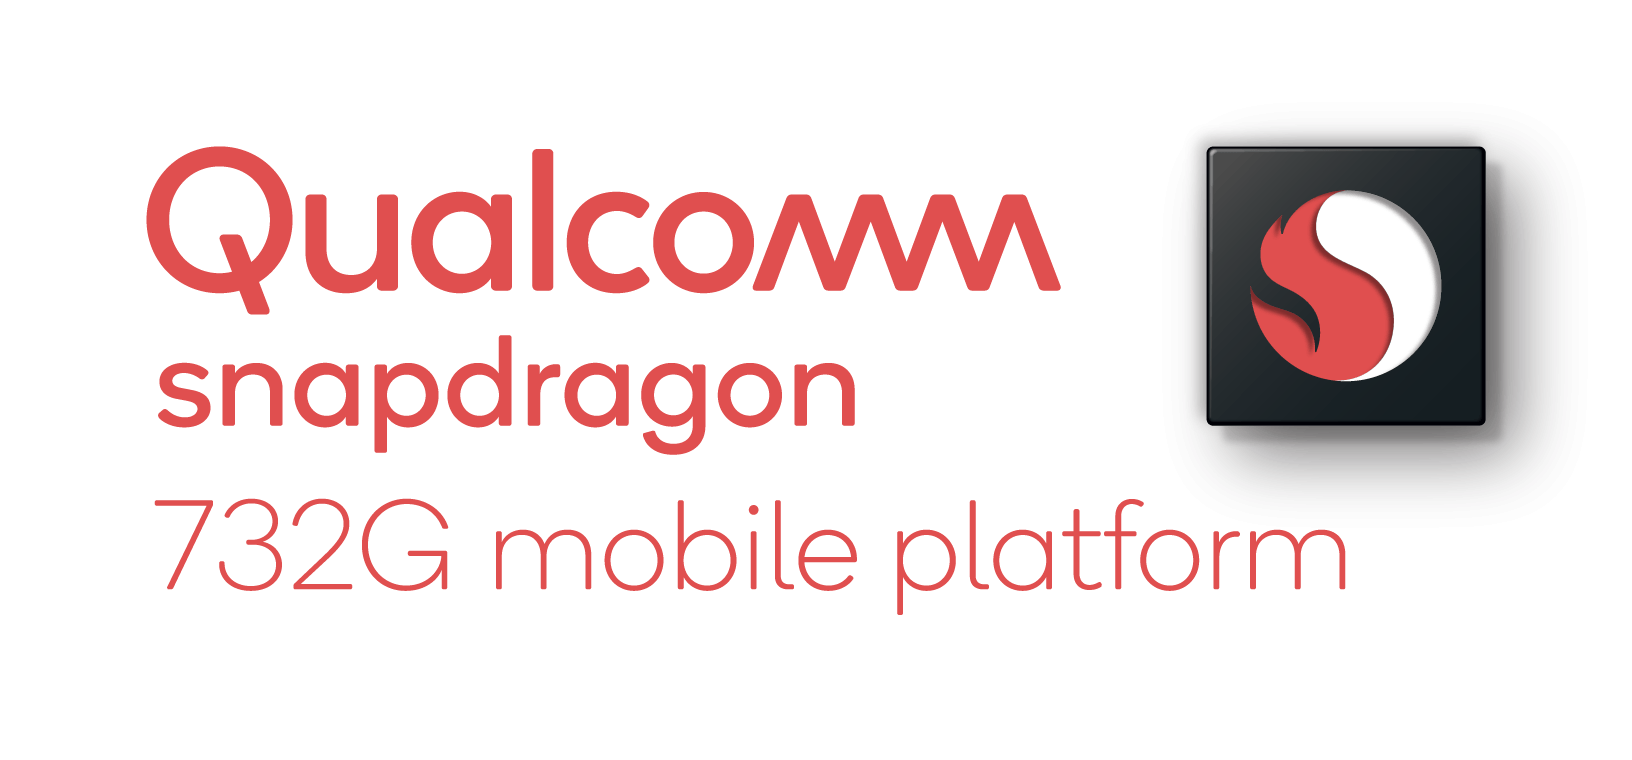 Qualcomm Snapdragon 732Gを発表、Snapdragon 730Gと比較して15%のGPU性能向上